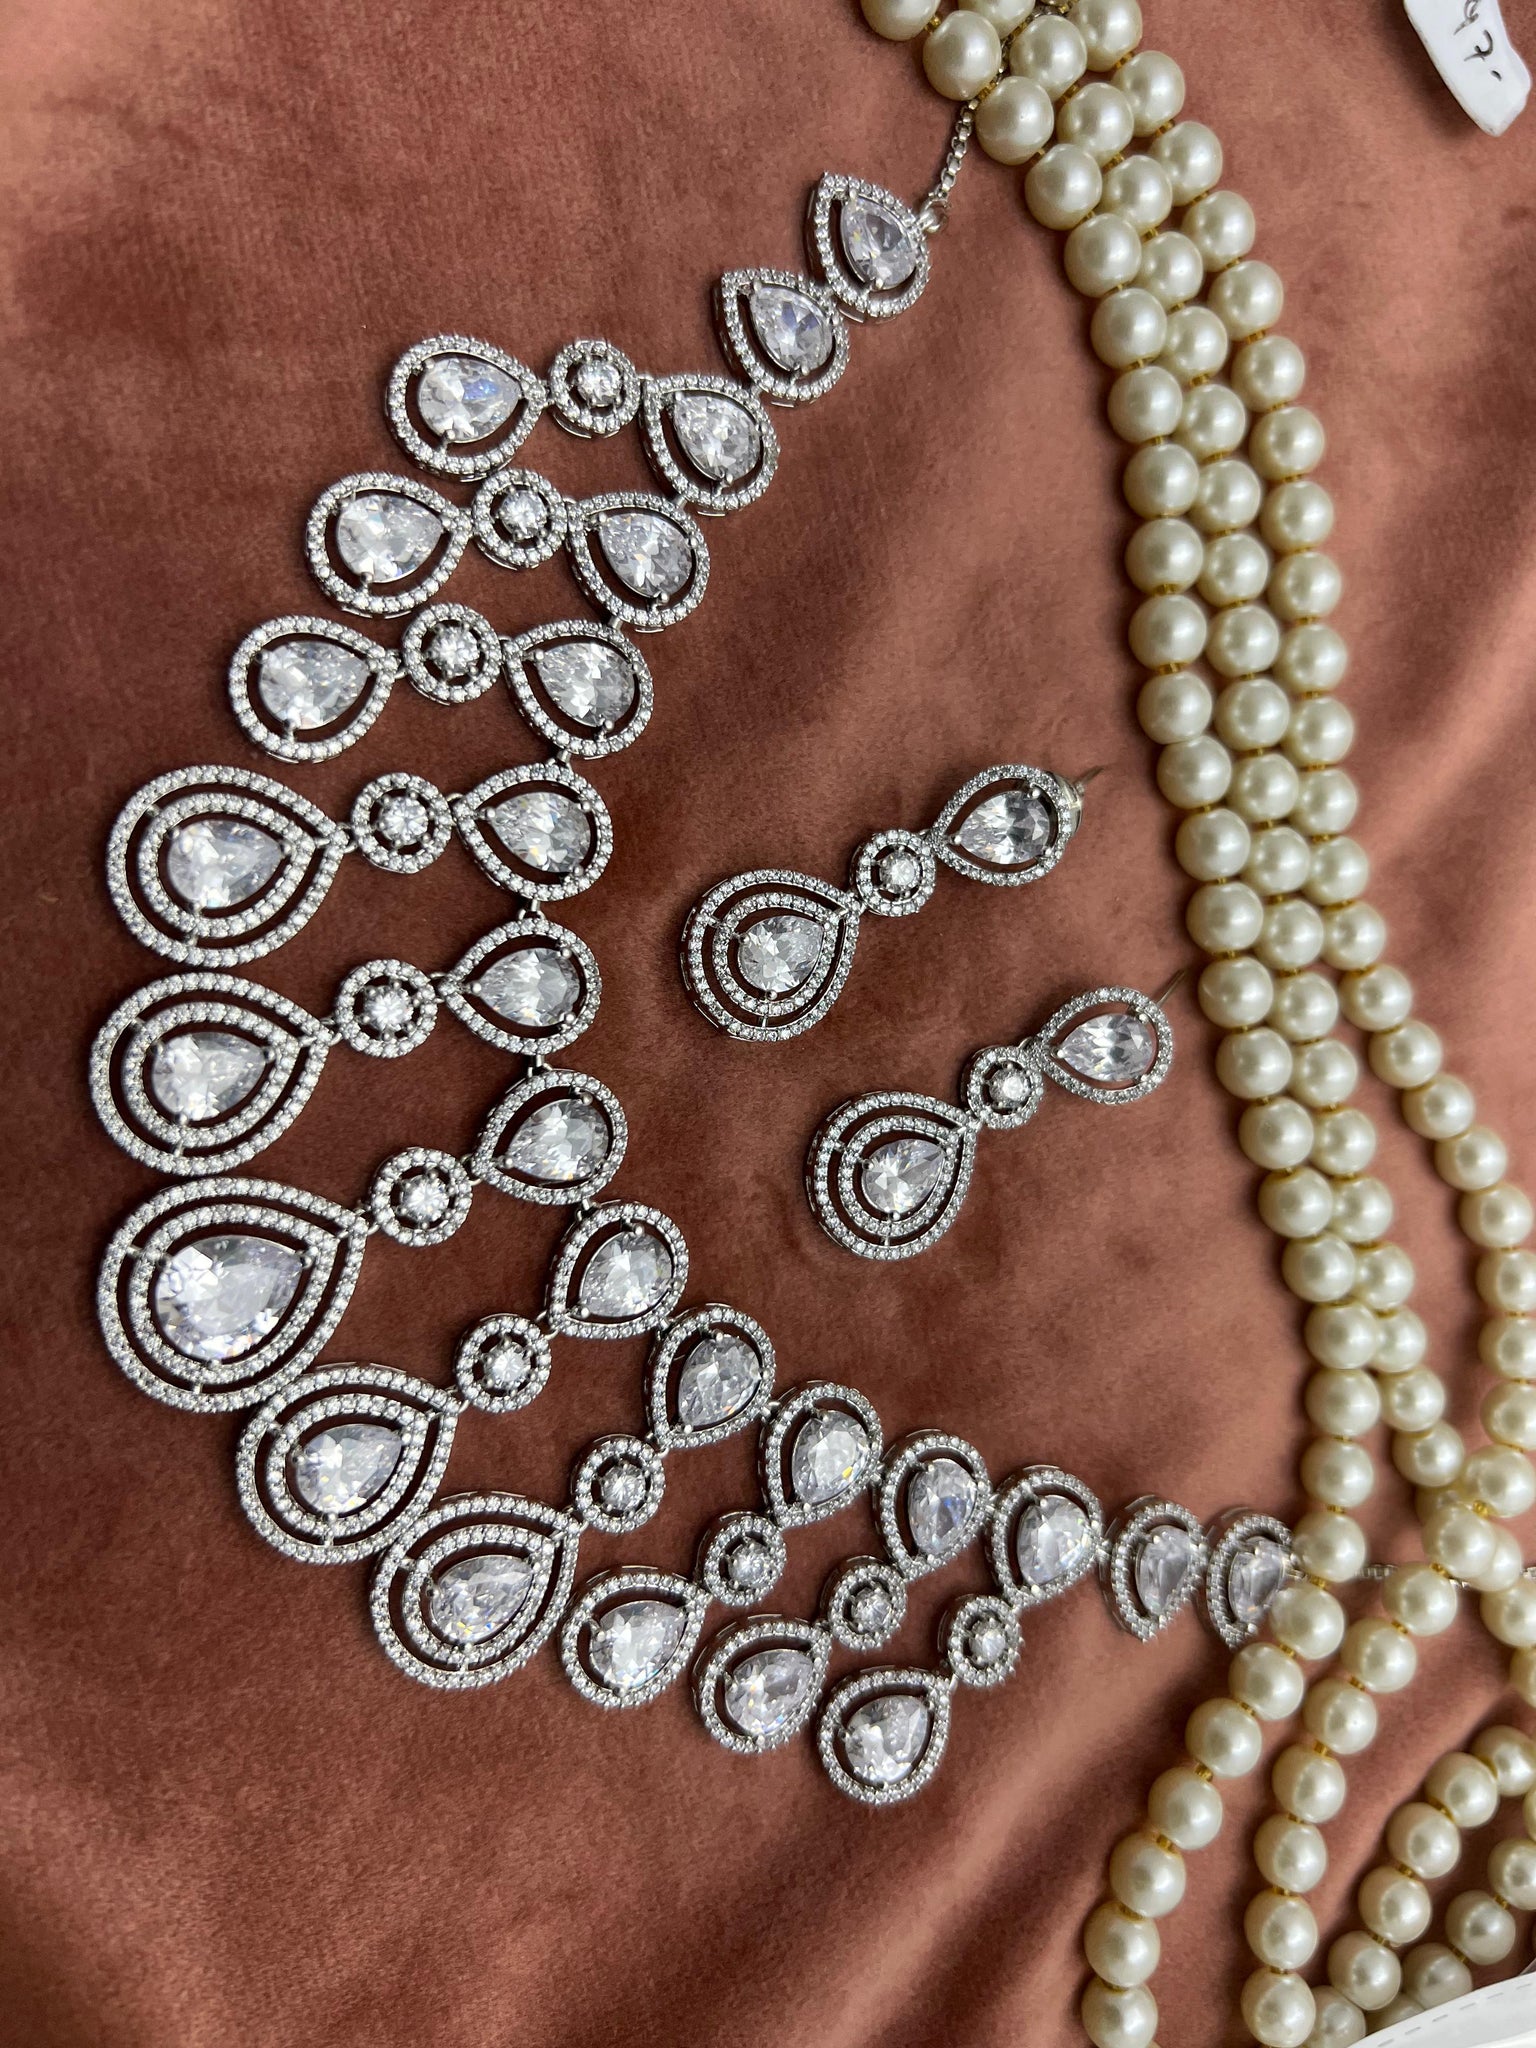 Beautiful designer American diamond necklace set